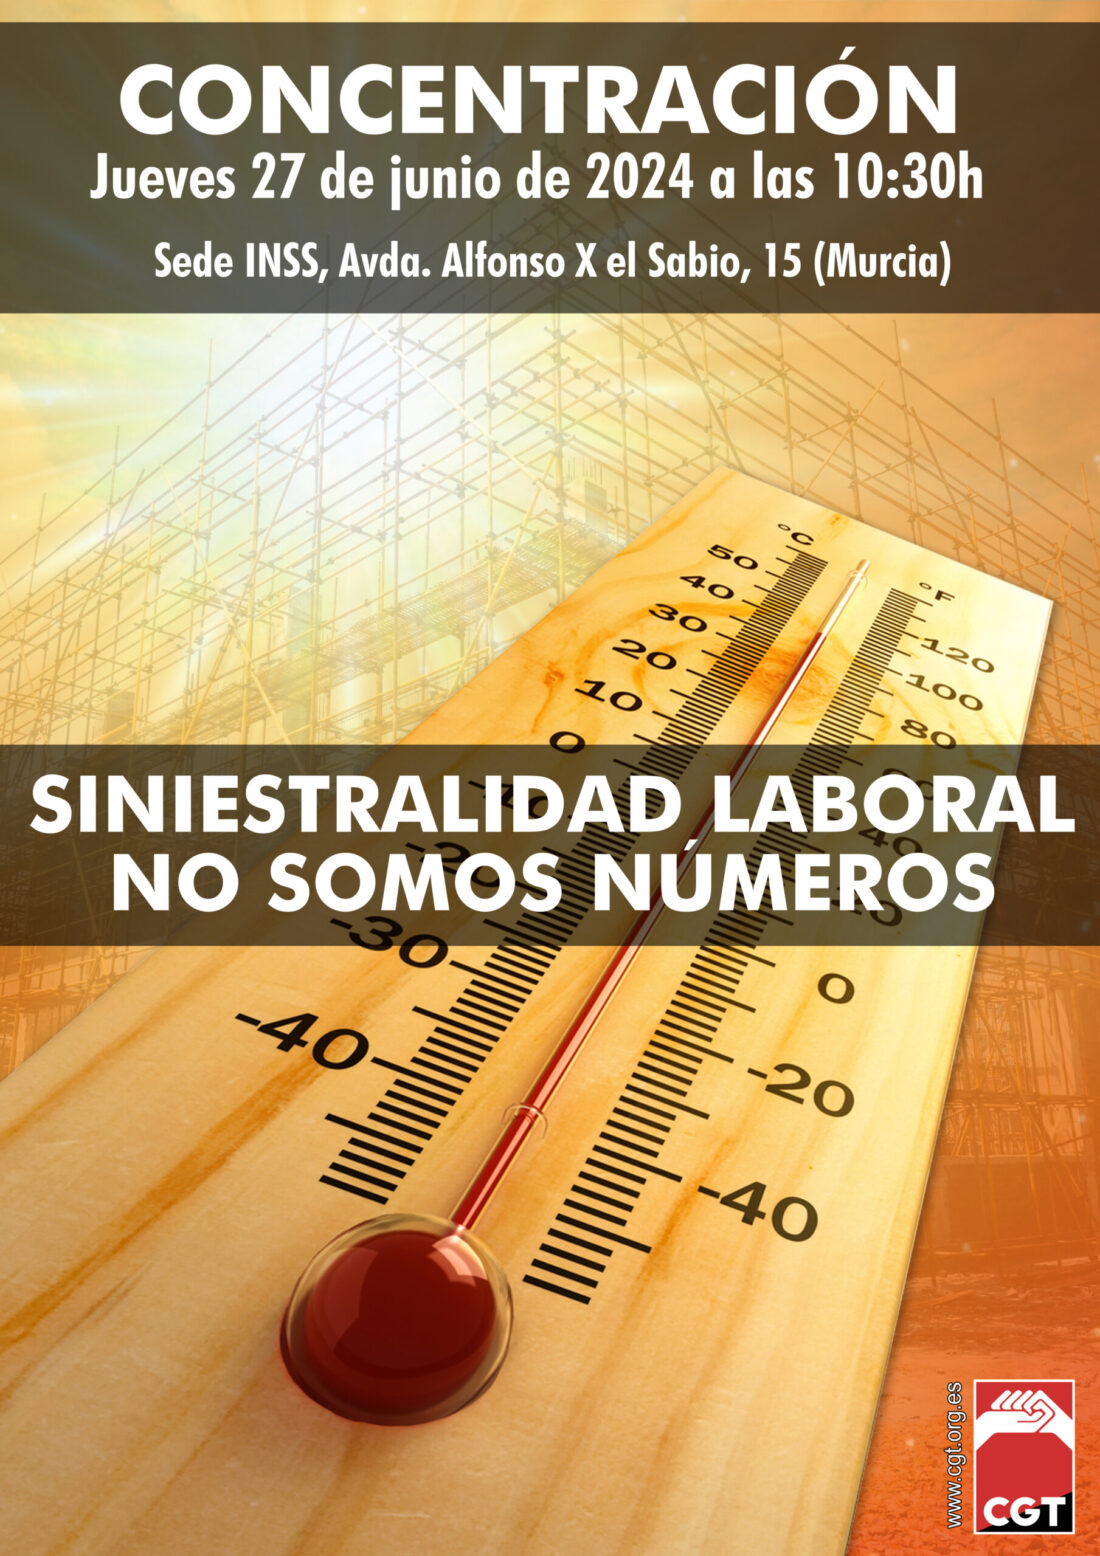 CGT señala la elevada tasa de accidentes laborales en Murcia y anuncia movilizaciones ante el INNS.